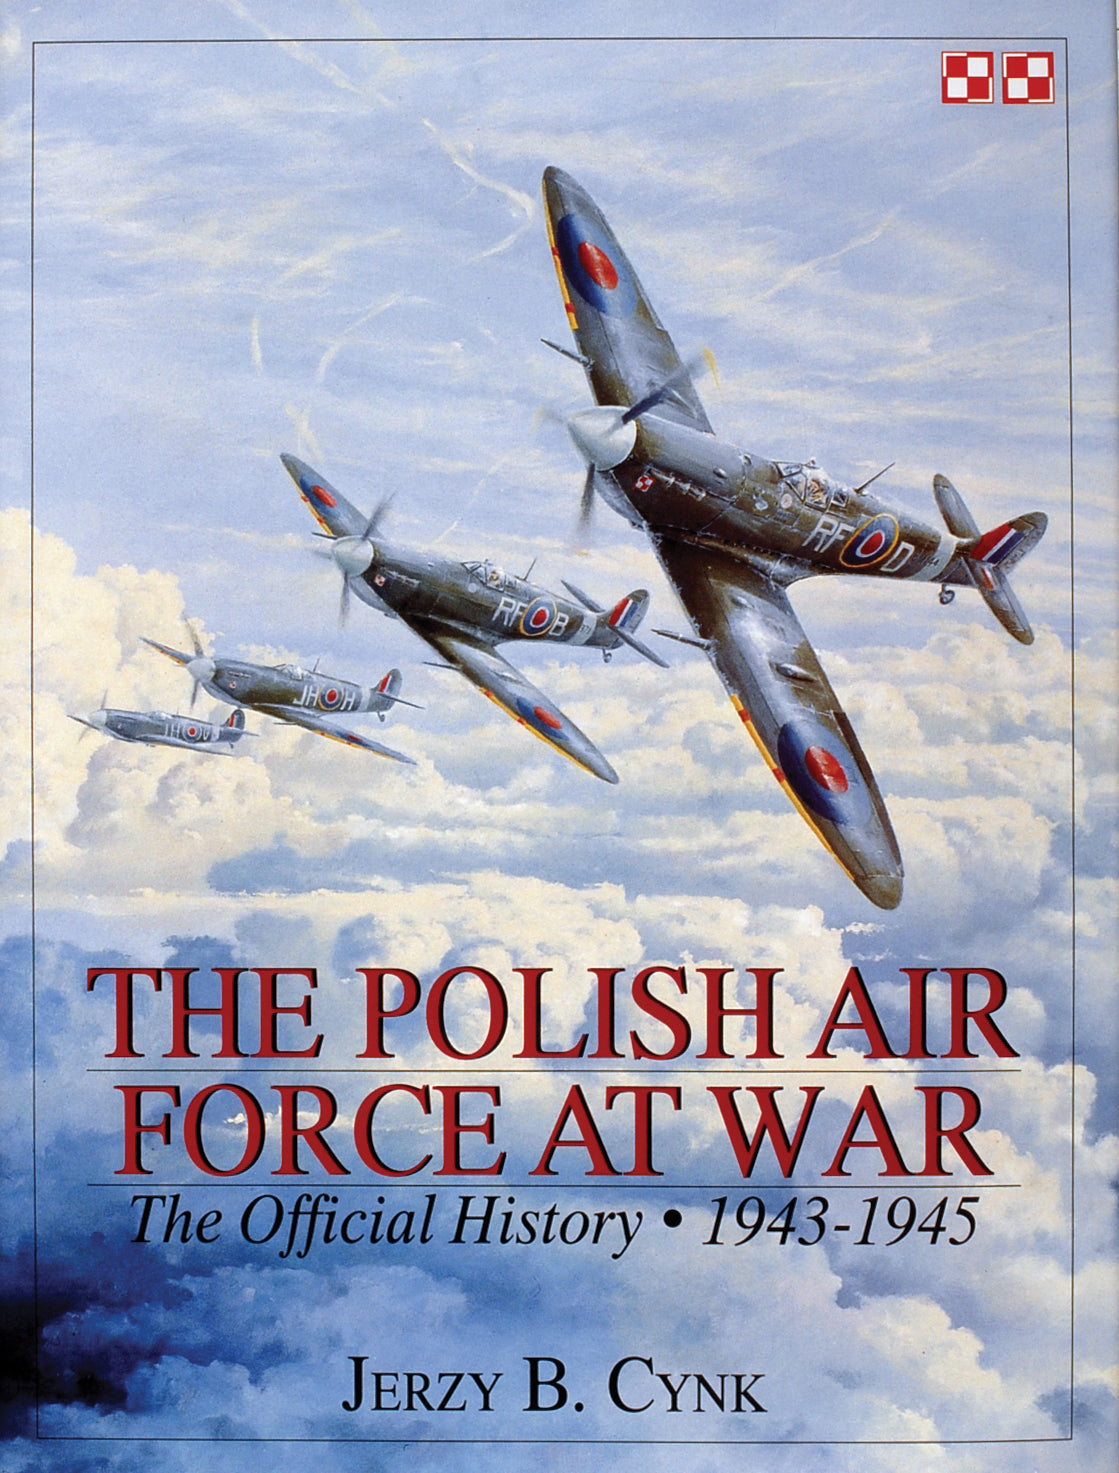 The Polish Air Force at War